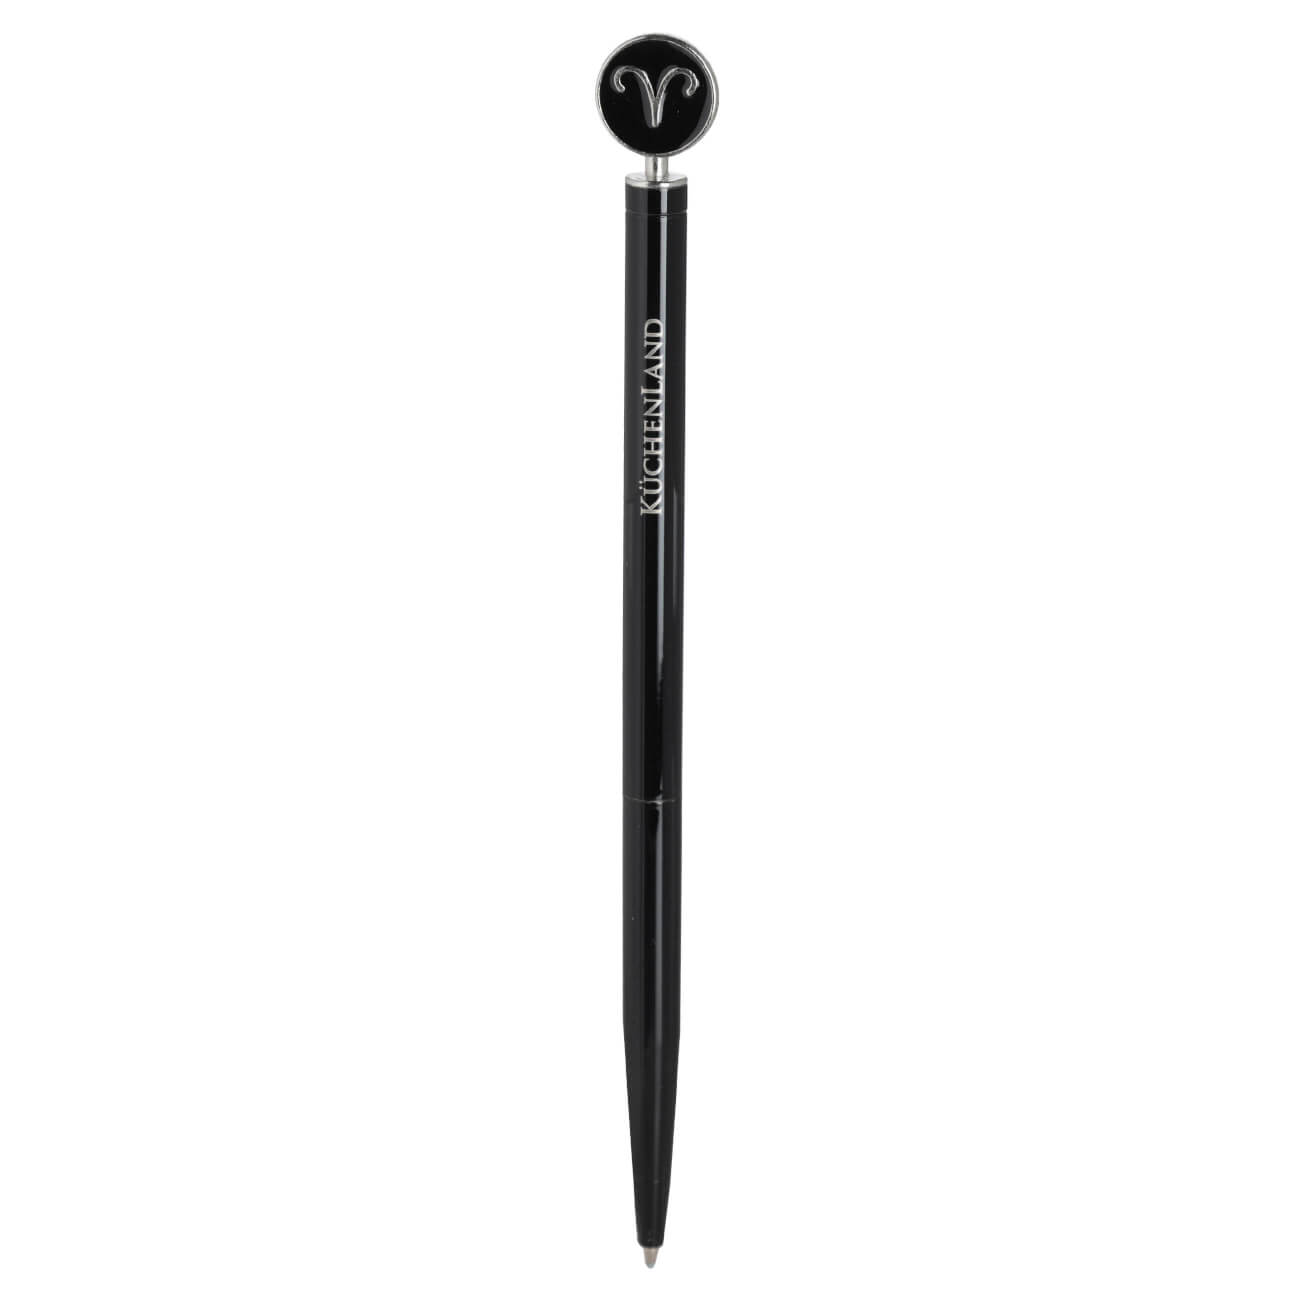 Ручка шариковая, 15 см, с фигуркой, сталь, черно-серебристая, Овен, Zodiac шариковая ручка hatber